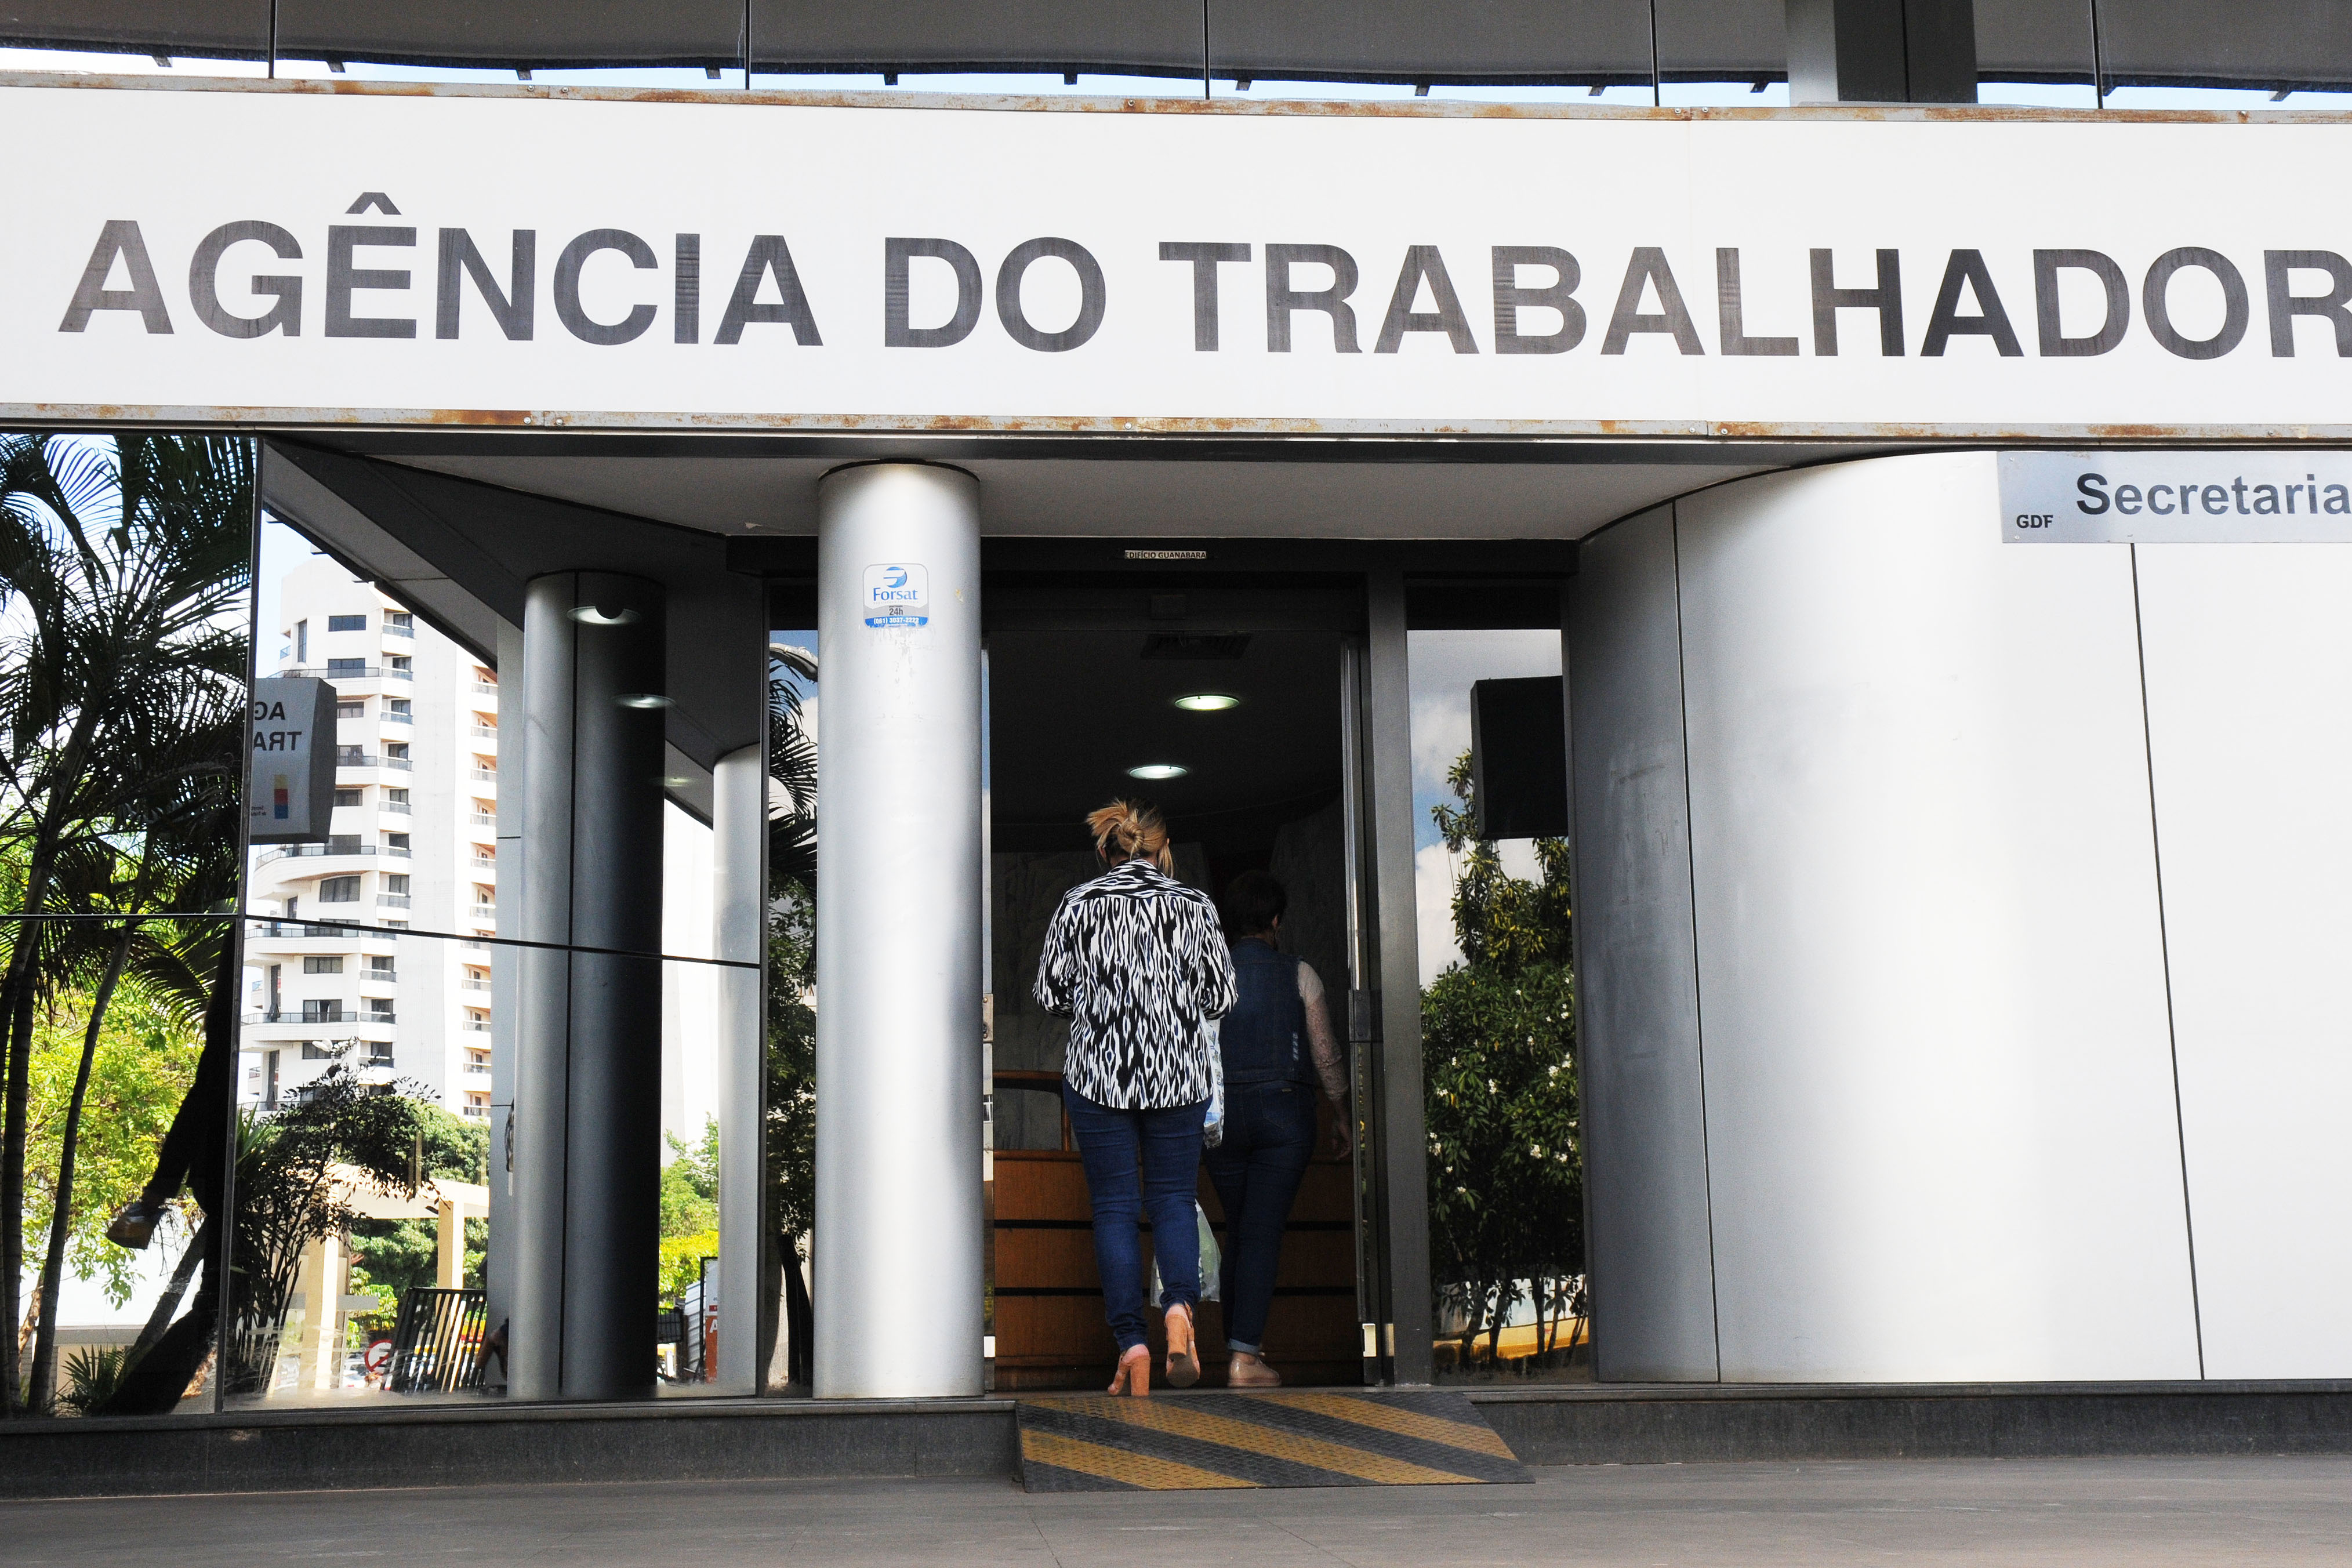 Agências do trabalhador têm 661 vagas nesta sexta (15) – Agência Brasília